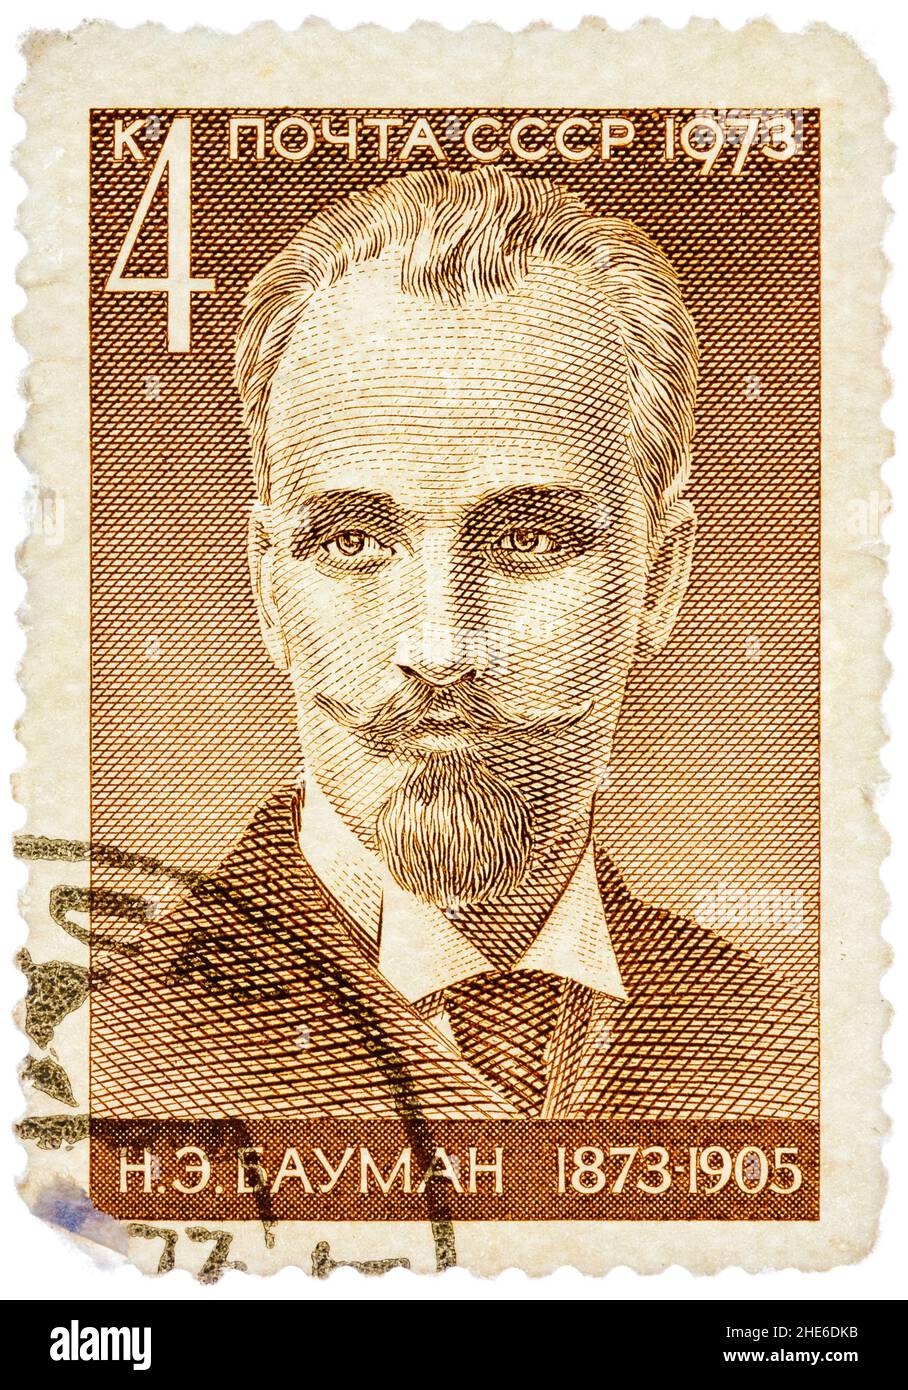 Le timbre imprimé en URSS montre Nikolai E. Bauman (1873-1905), révolutionnaire bolcheviste Banque D'Images